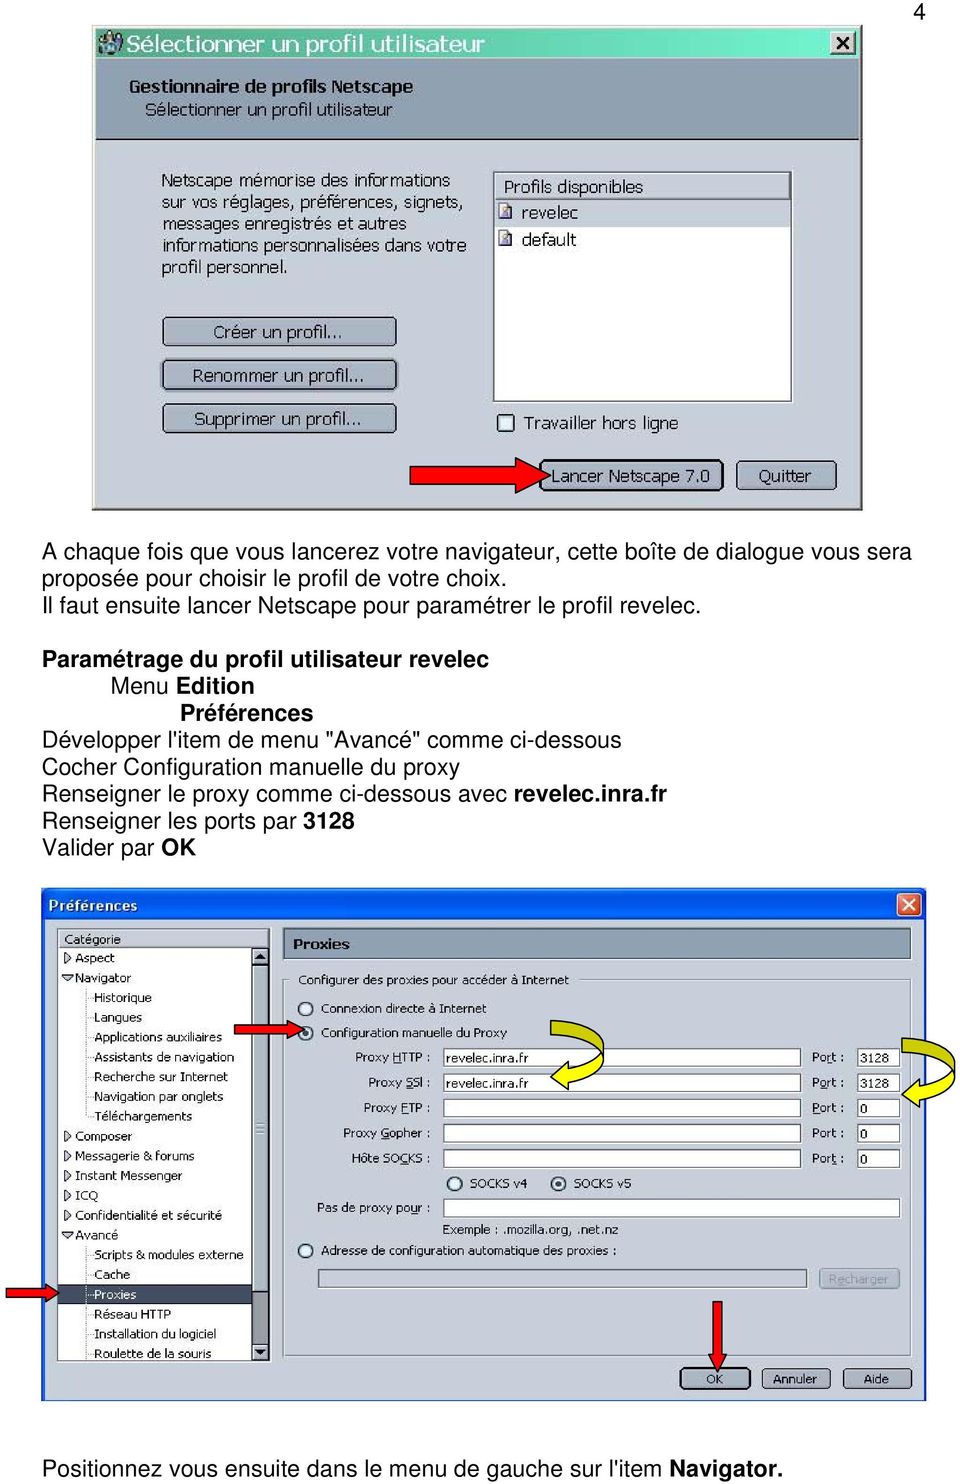 Paramétrage du profil utilisateur revelec Menu Edition Préférences Développer l'item de menu "Avancé" comme ci-dessous Cocher